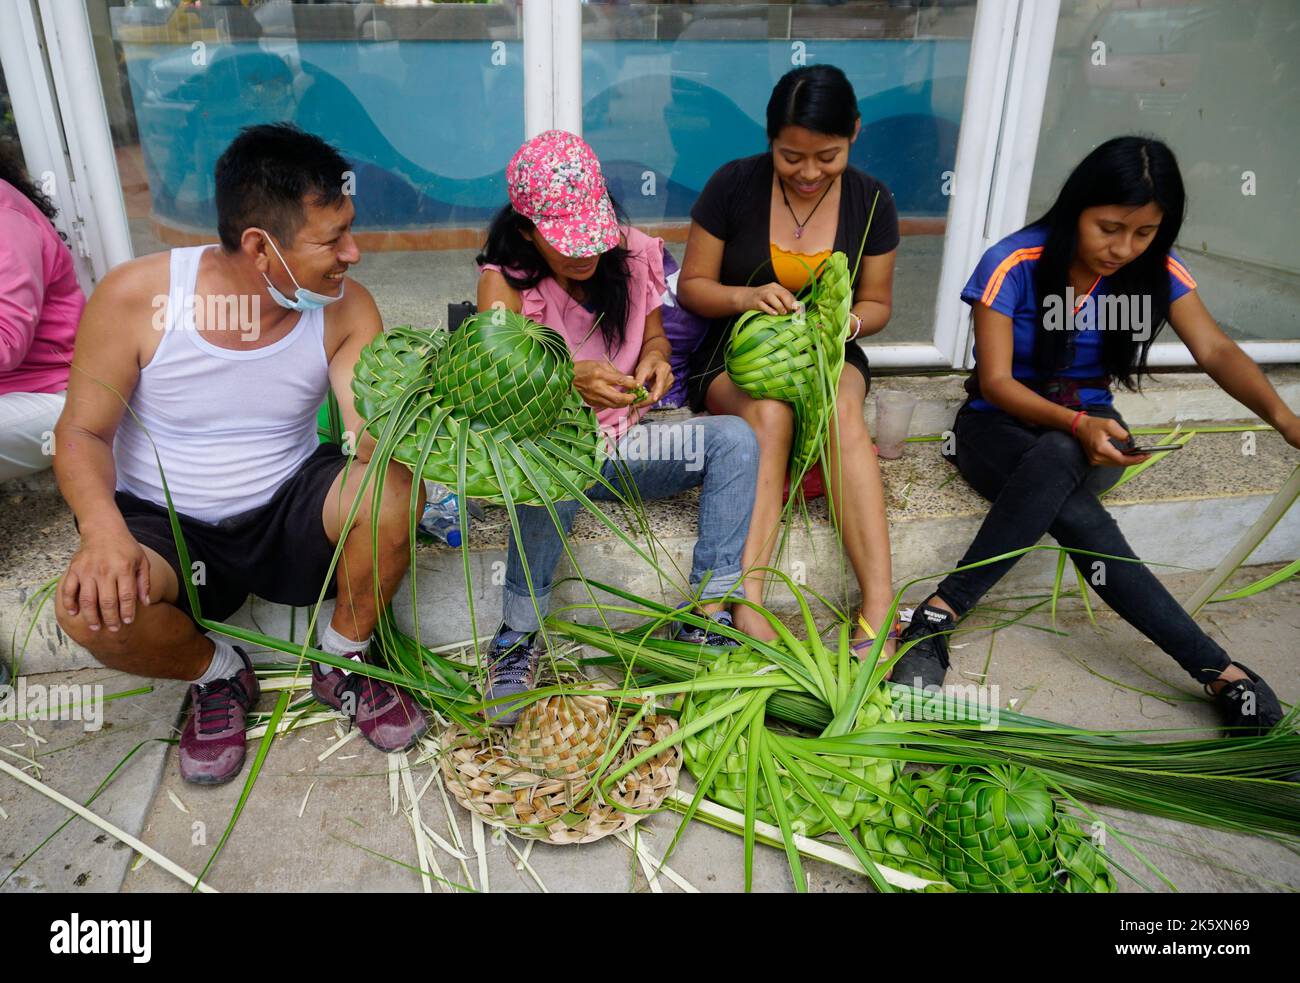 Membres de la famille qui font des chapeaux de feuilles de palmier à noix de coco, Acapulco, Mexique Banque D'Images